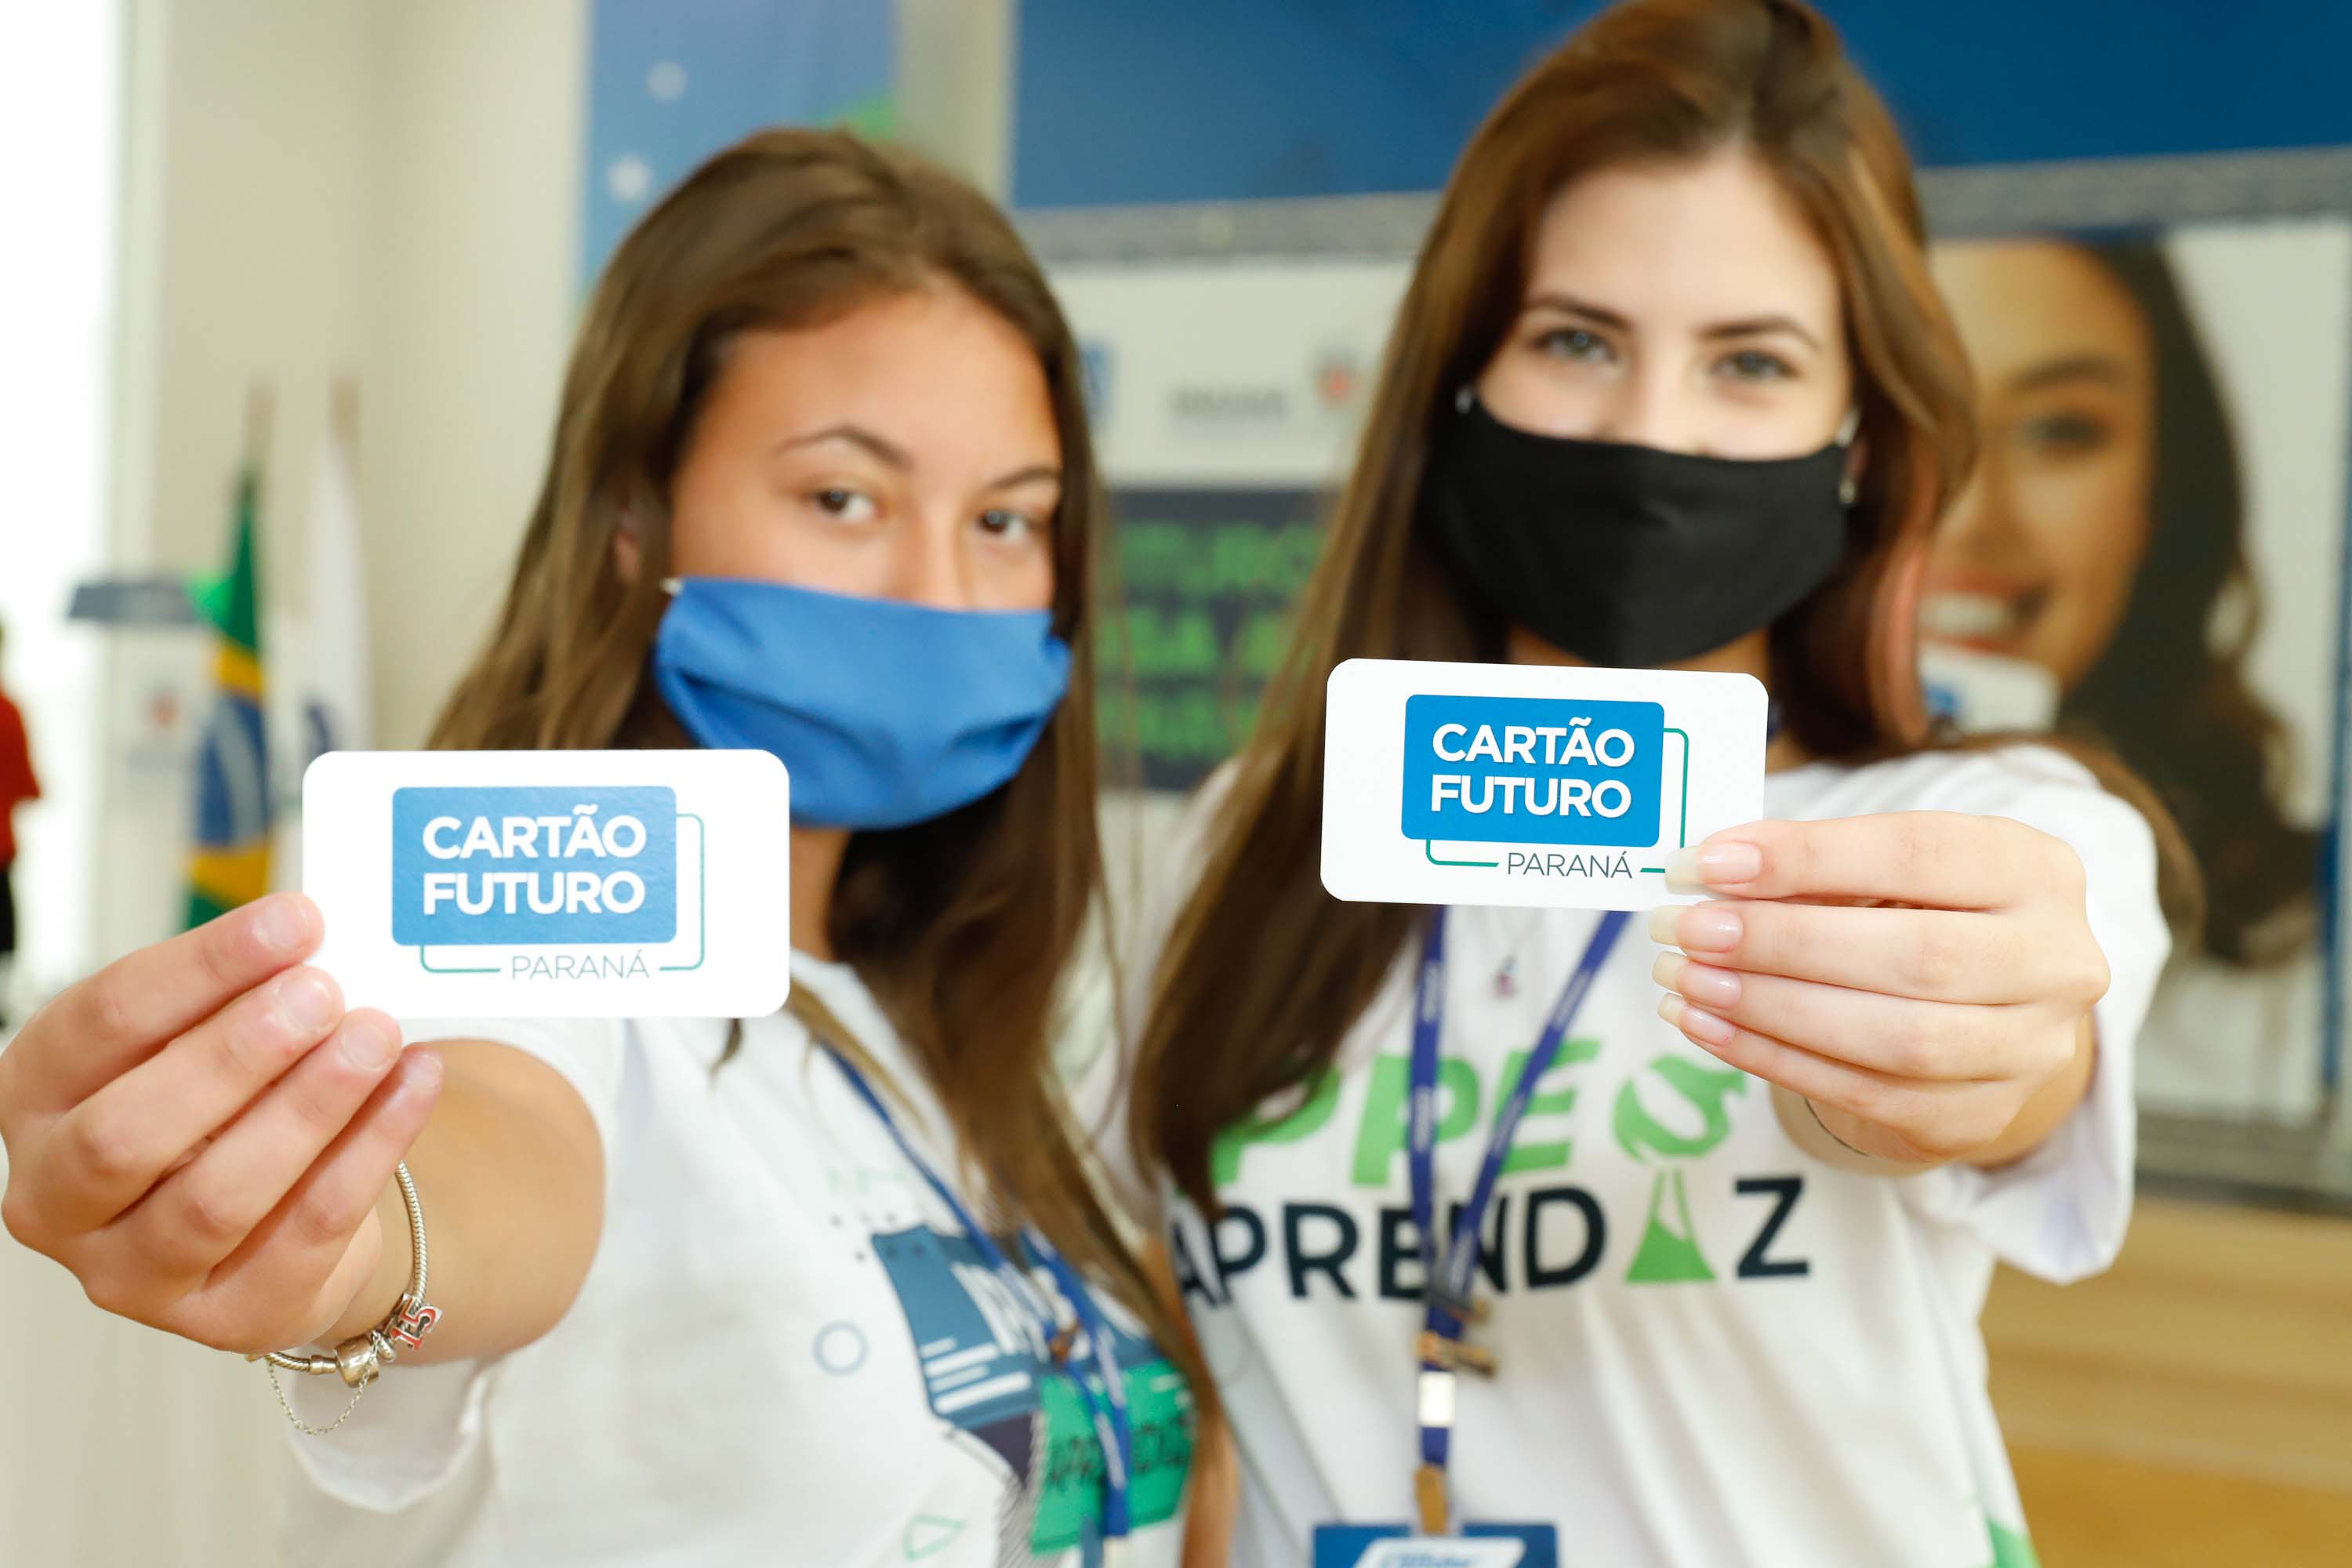  Cartão Futuro abre novas oportunidades para jovens aprendizes no Paraná